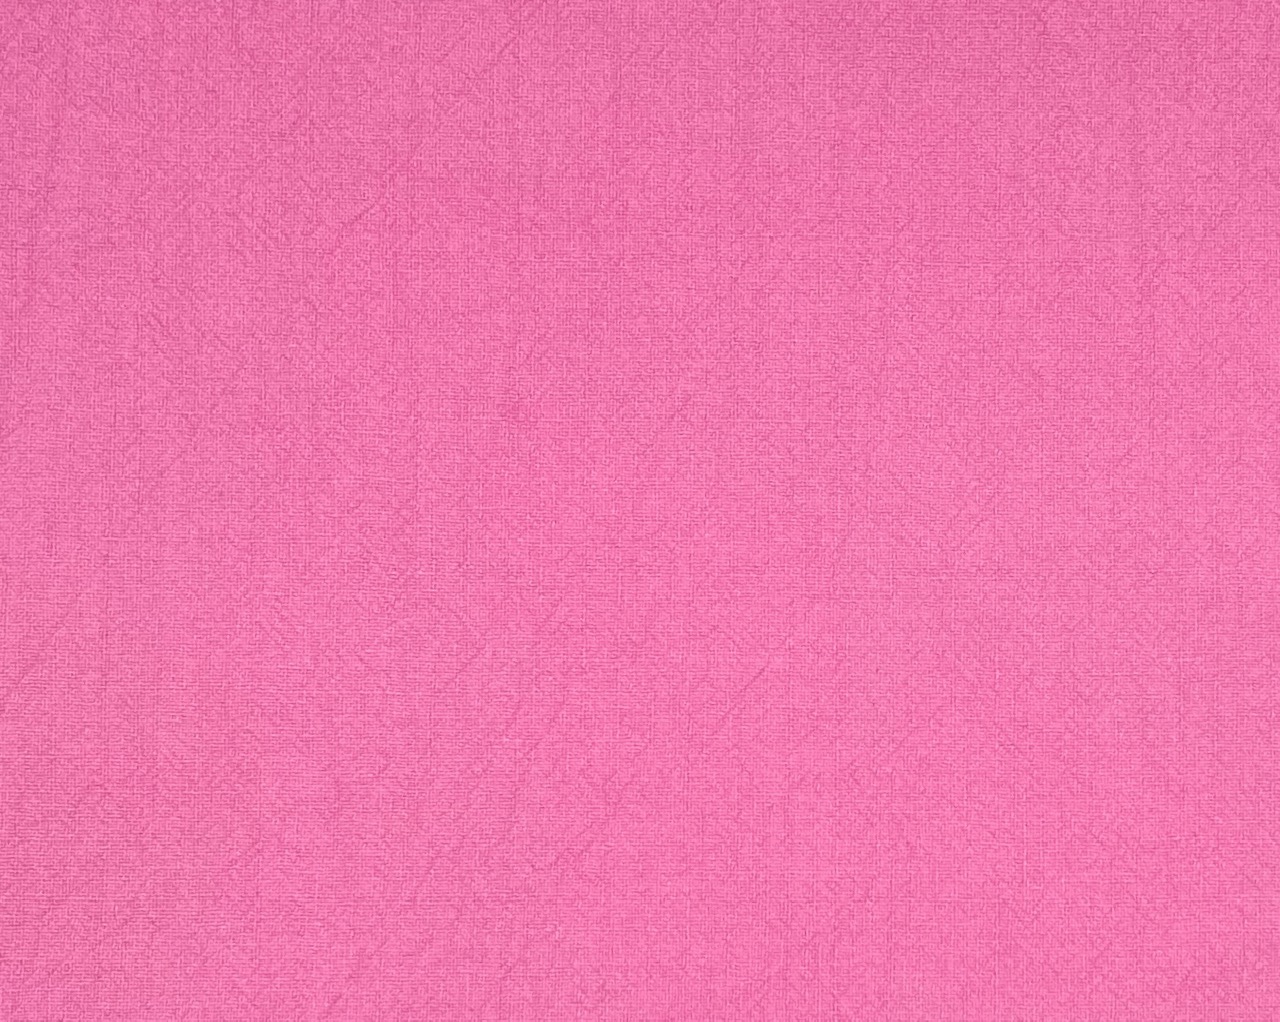 Einfach Pink it is richtig riesig! (140x100cm) 